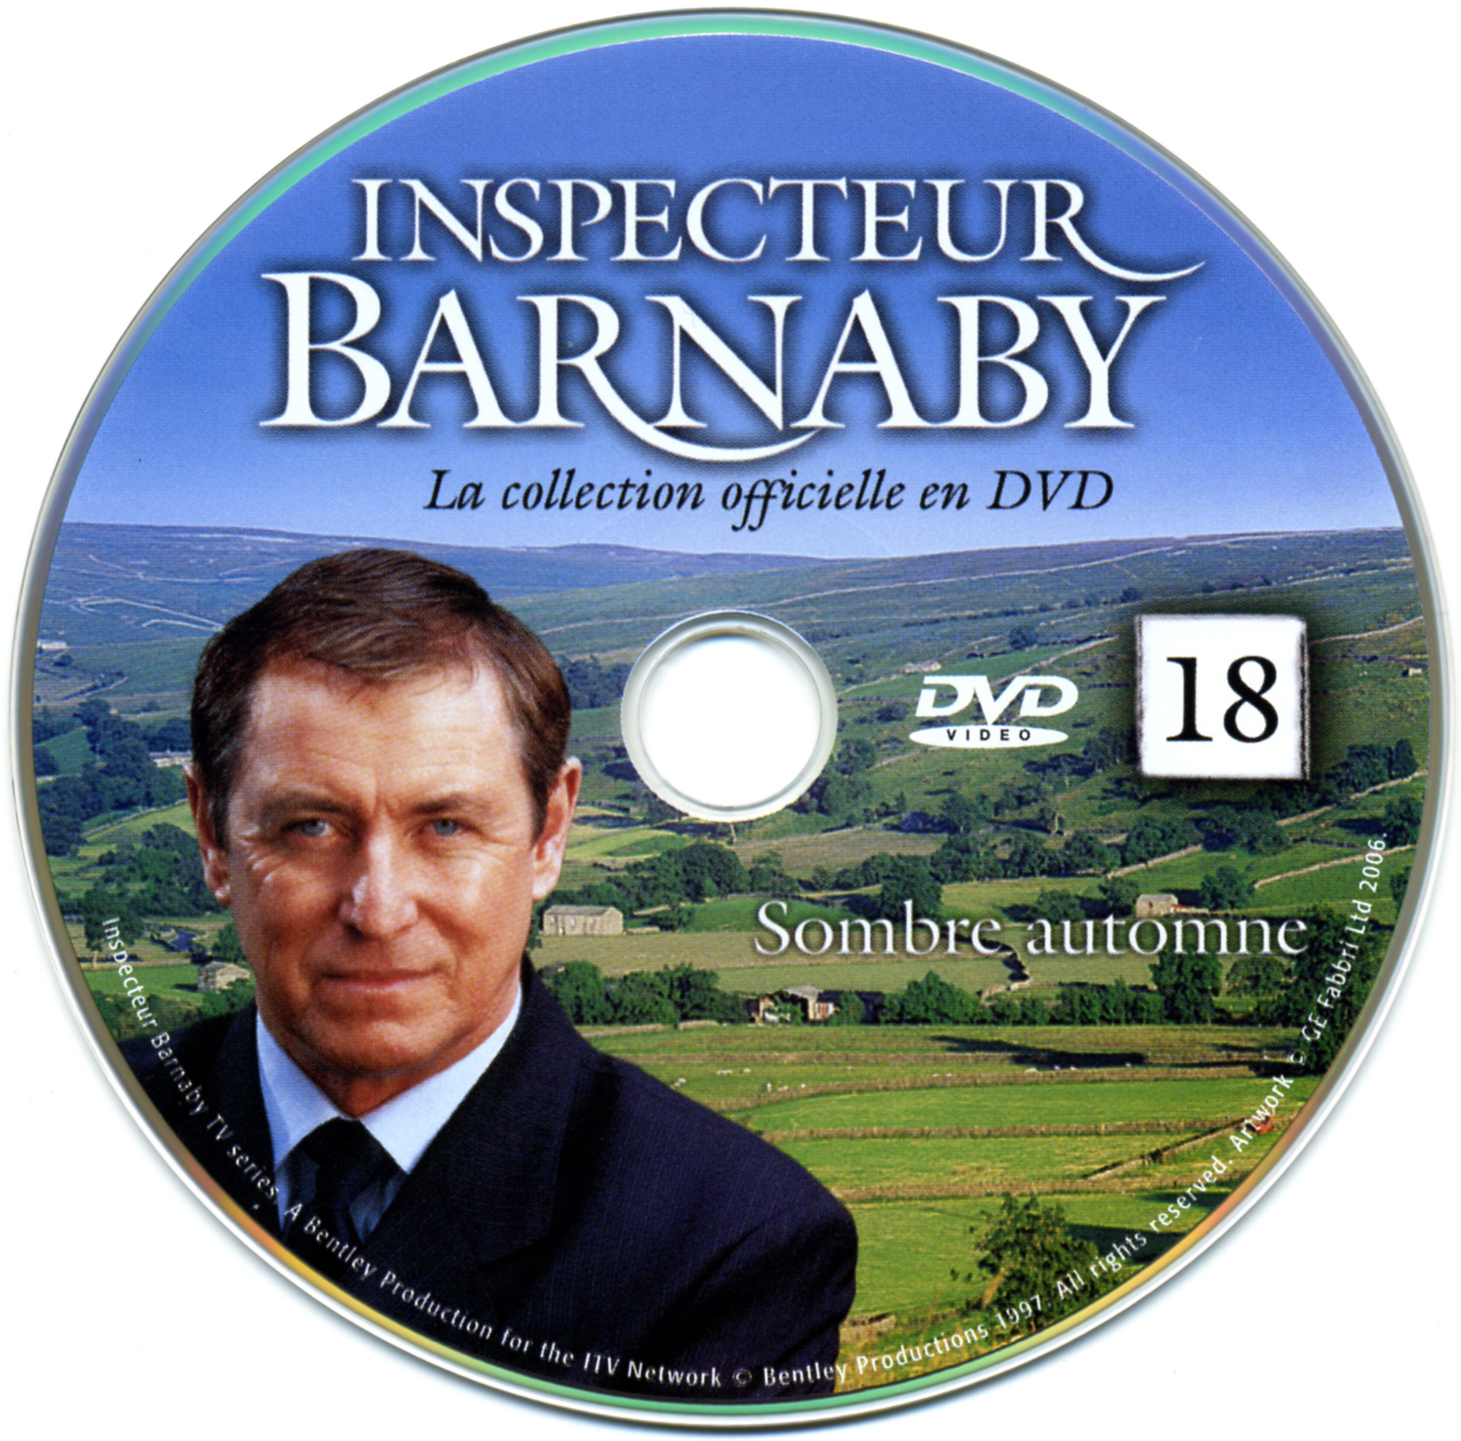 Barnaby vol 18 - Sombre automne